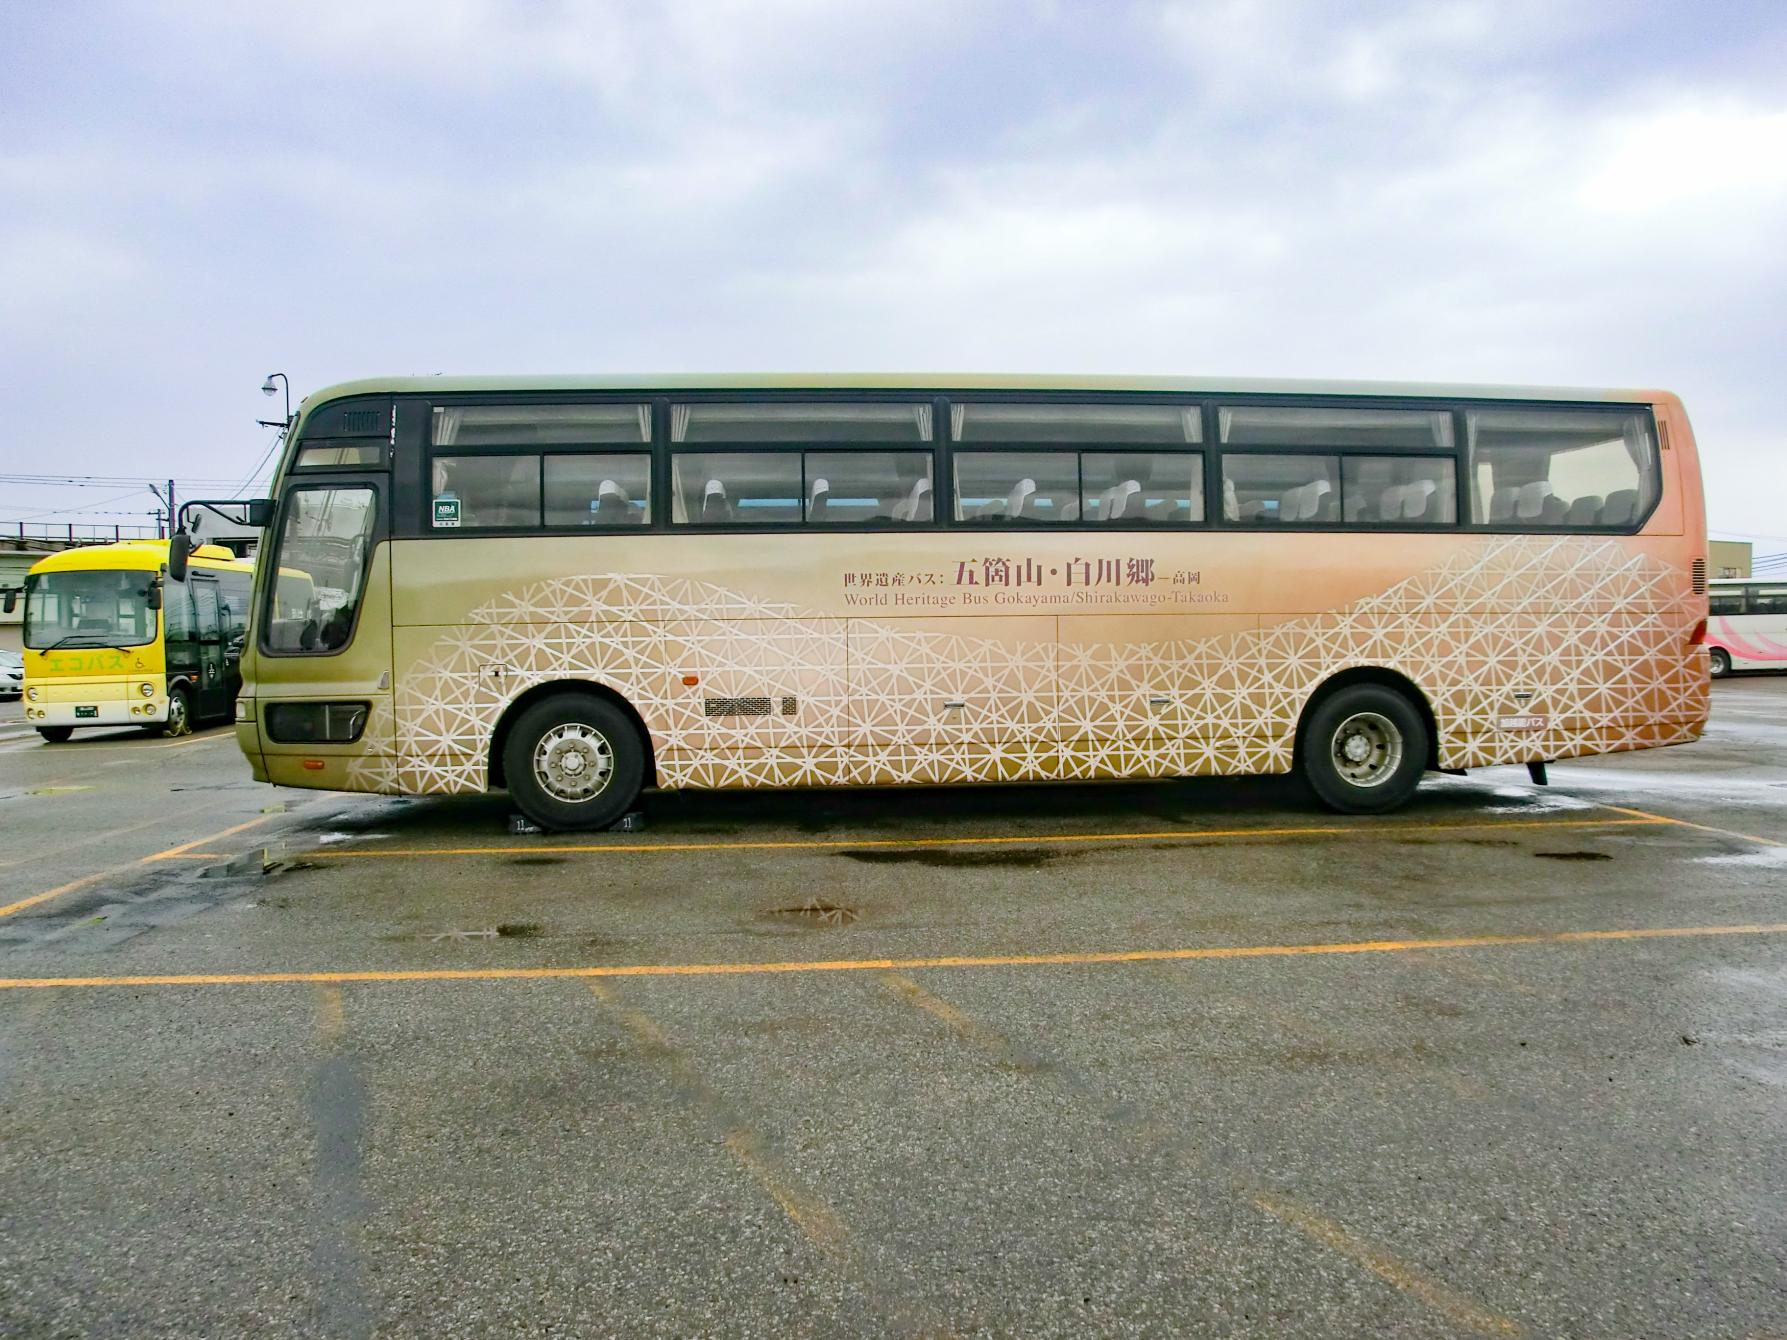 巡访世界遗产的观光路线巴士“世界遗产巴士”-1